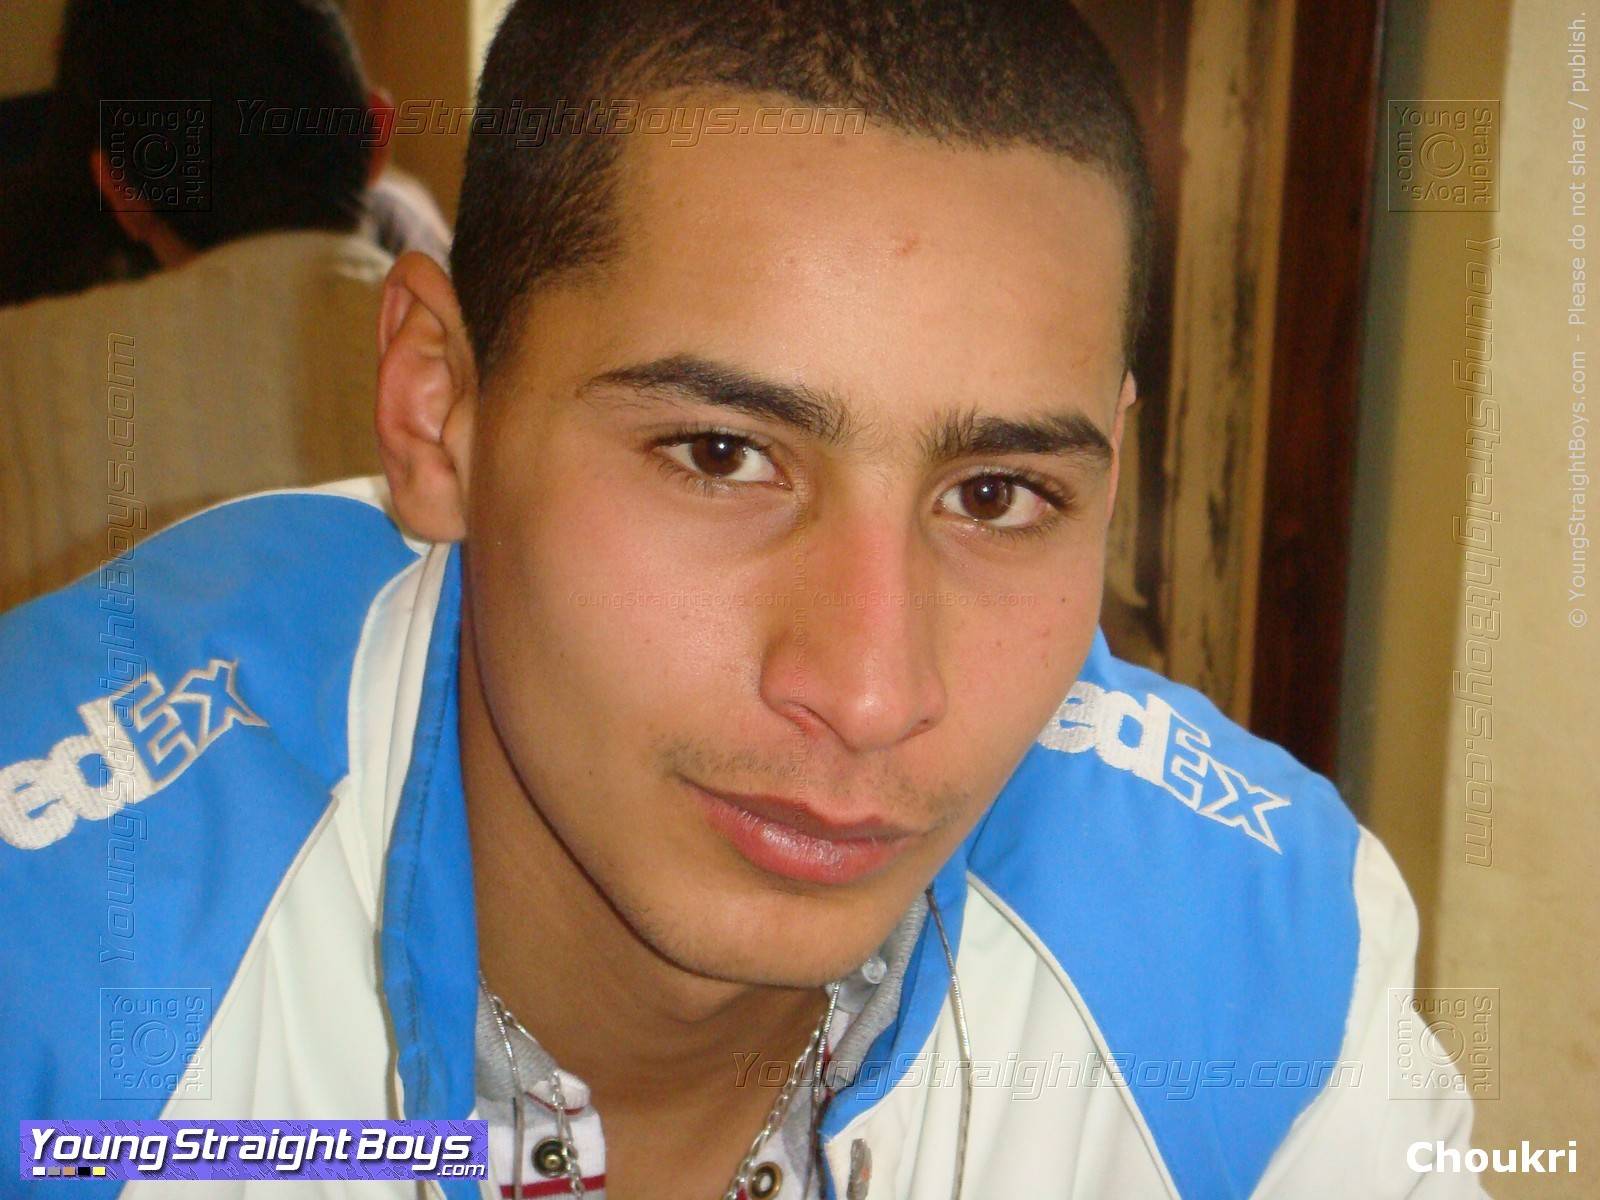 Zdjęcie twarzy bardzo przystojnego młodego arabskiego hetero w kawiarni, uśmiechnięty (urocza twarz, oczy i usta)